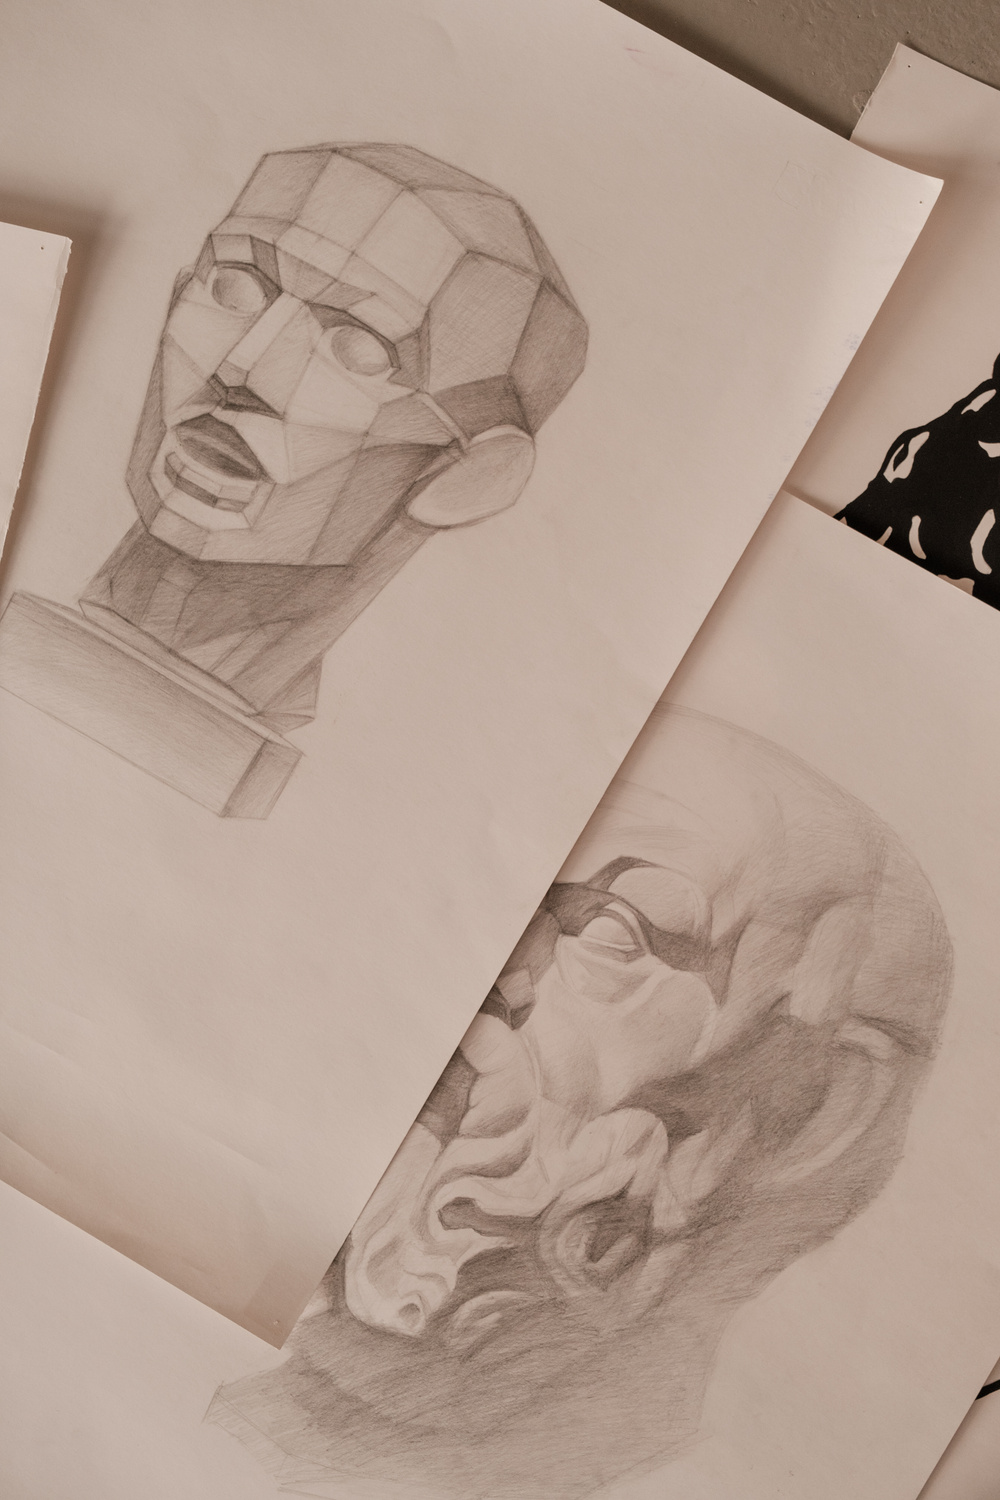 Sketches in Paper in Art Studio